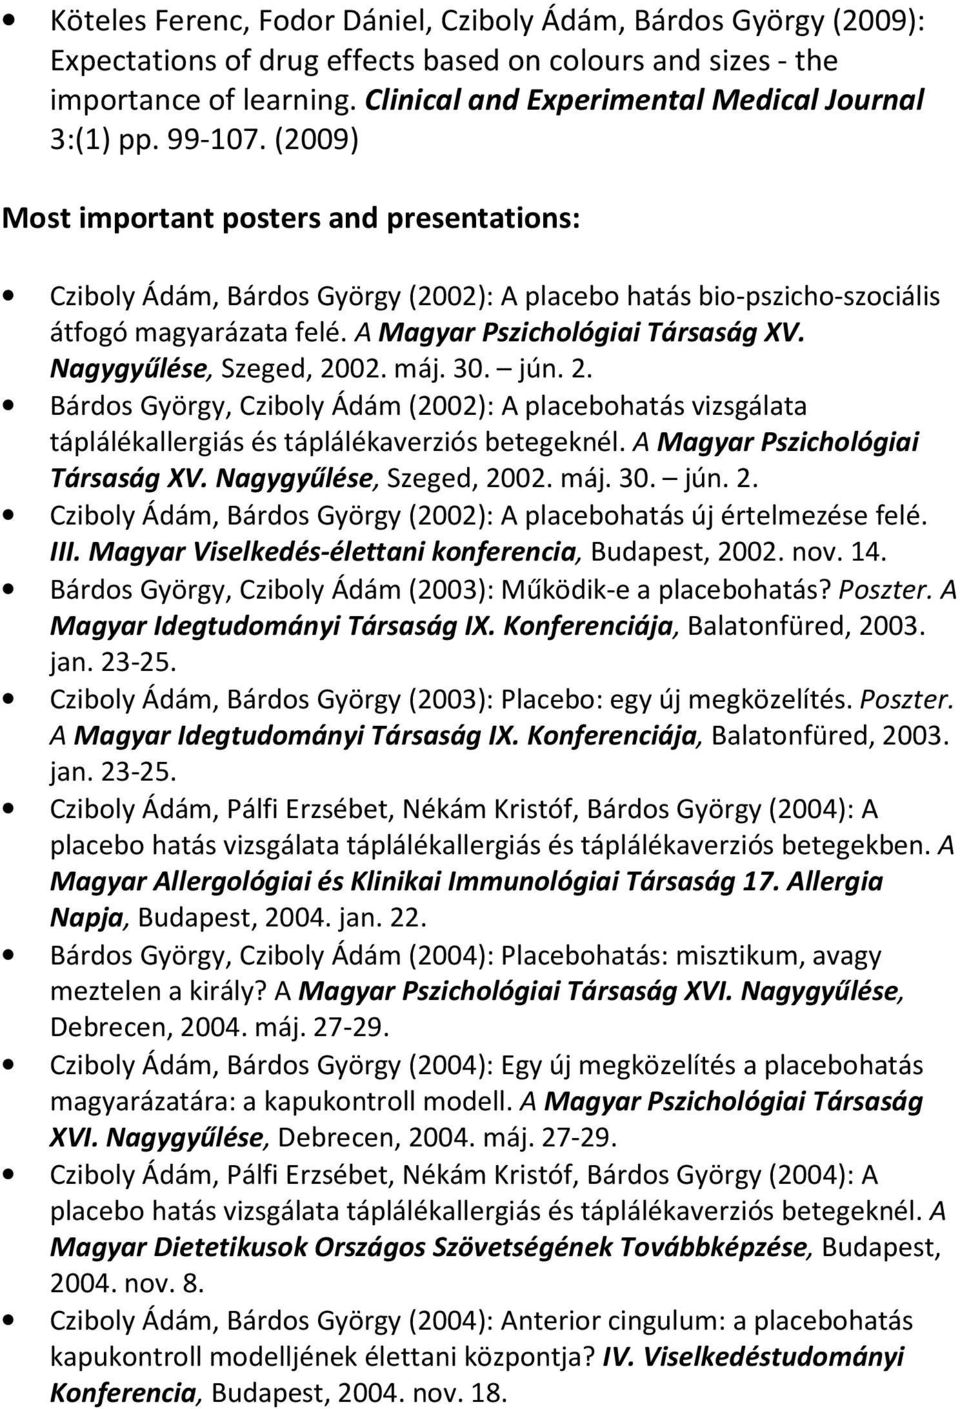 (2009) Most important posters and presentations: Cziboly Ádám, Bárdos György (2002): A placebo hatás bio-pszicho-szociális átfogó magyarázata felé. A Magyar Pszichológiai Társaság XV.